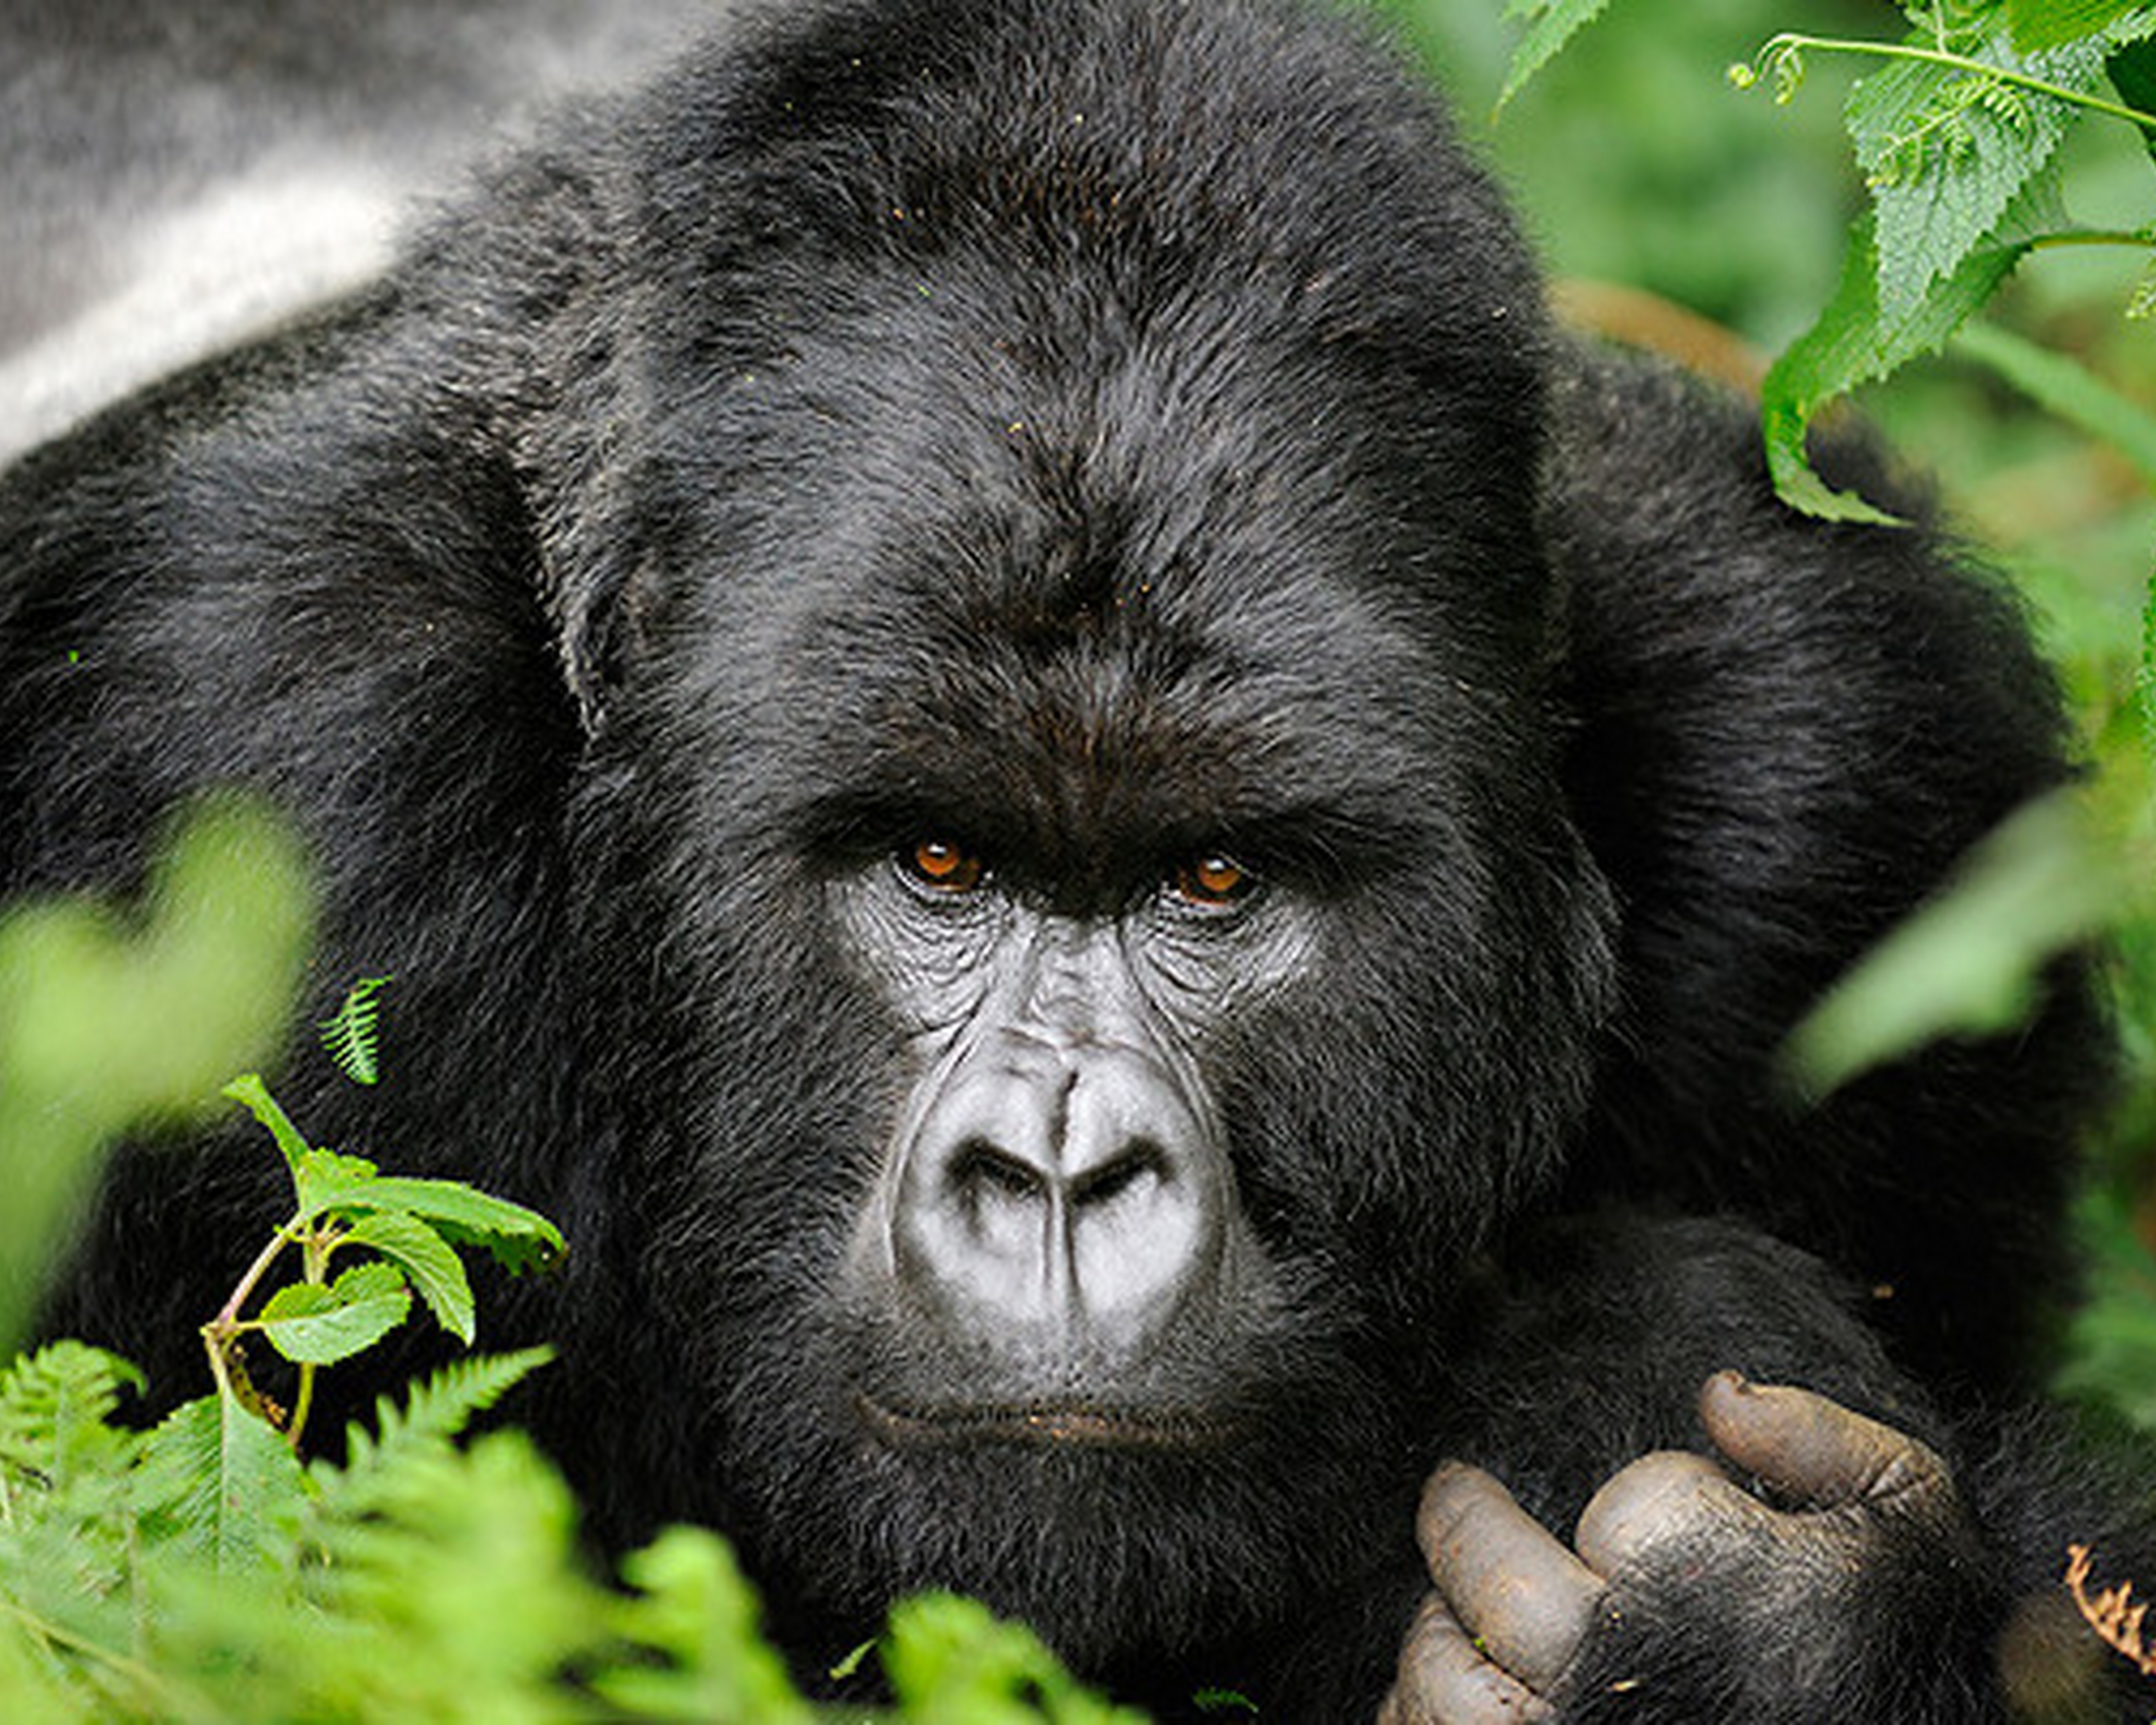 wilderness safaris gorillas